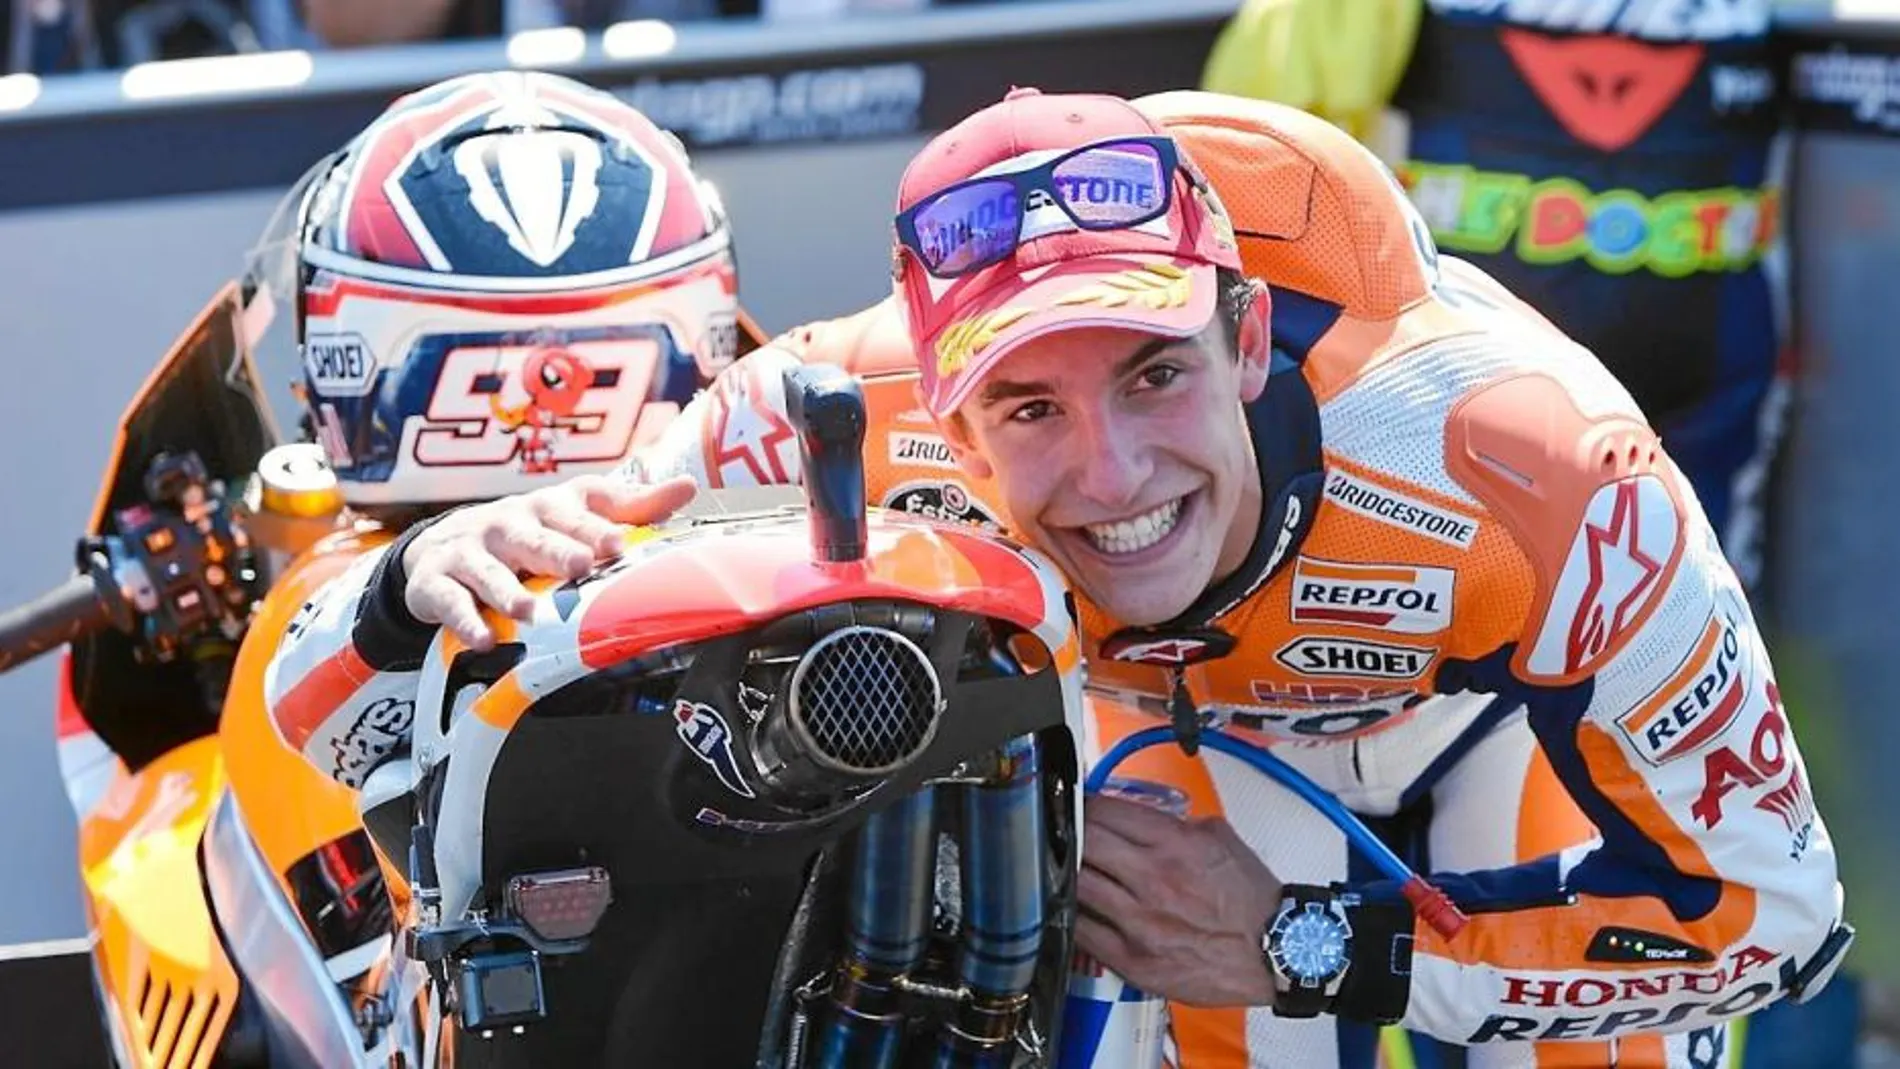 Marc «mima» a su moto nada más ganar la carrera de MotoGP en Laguna Seca